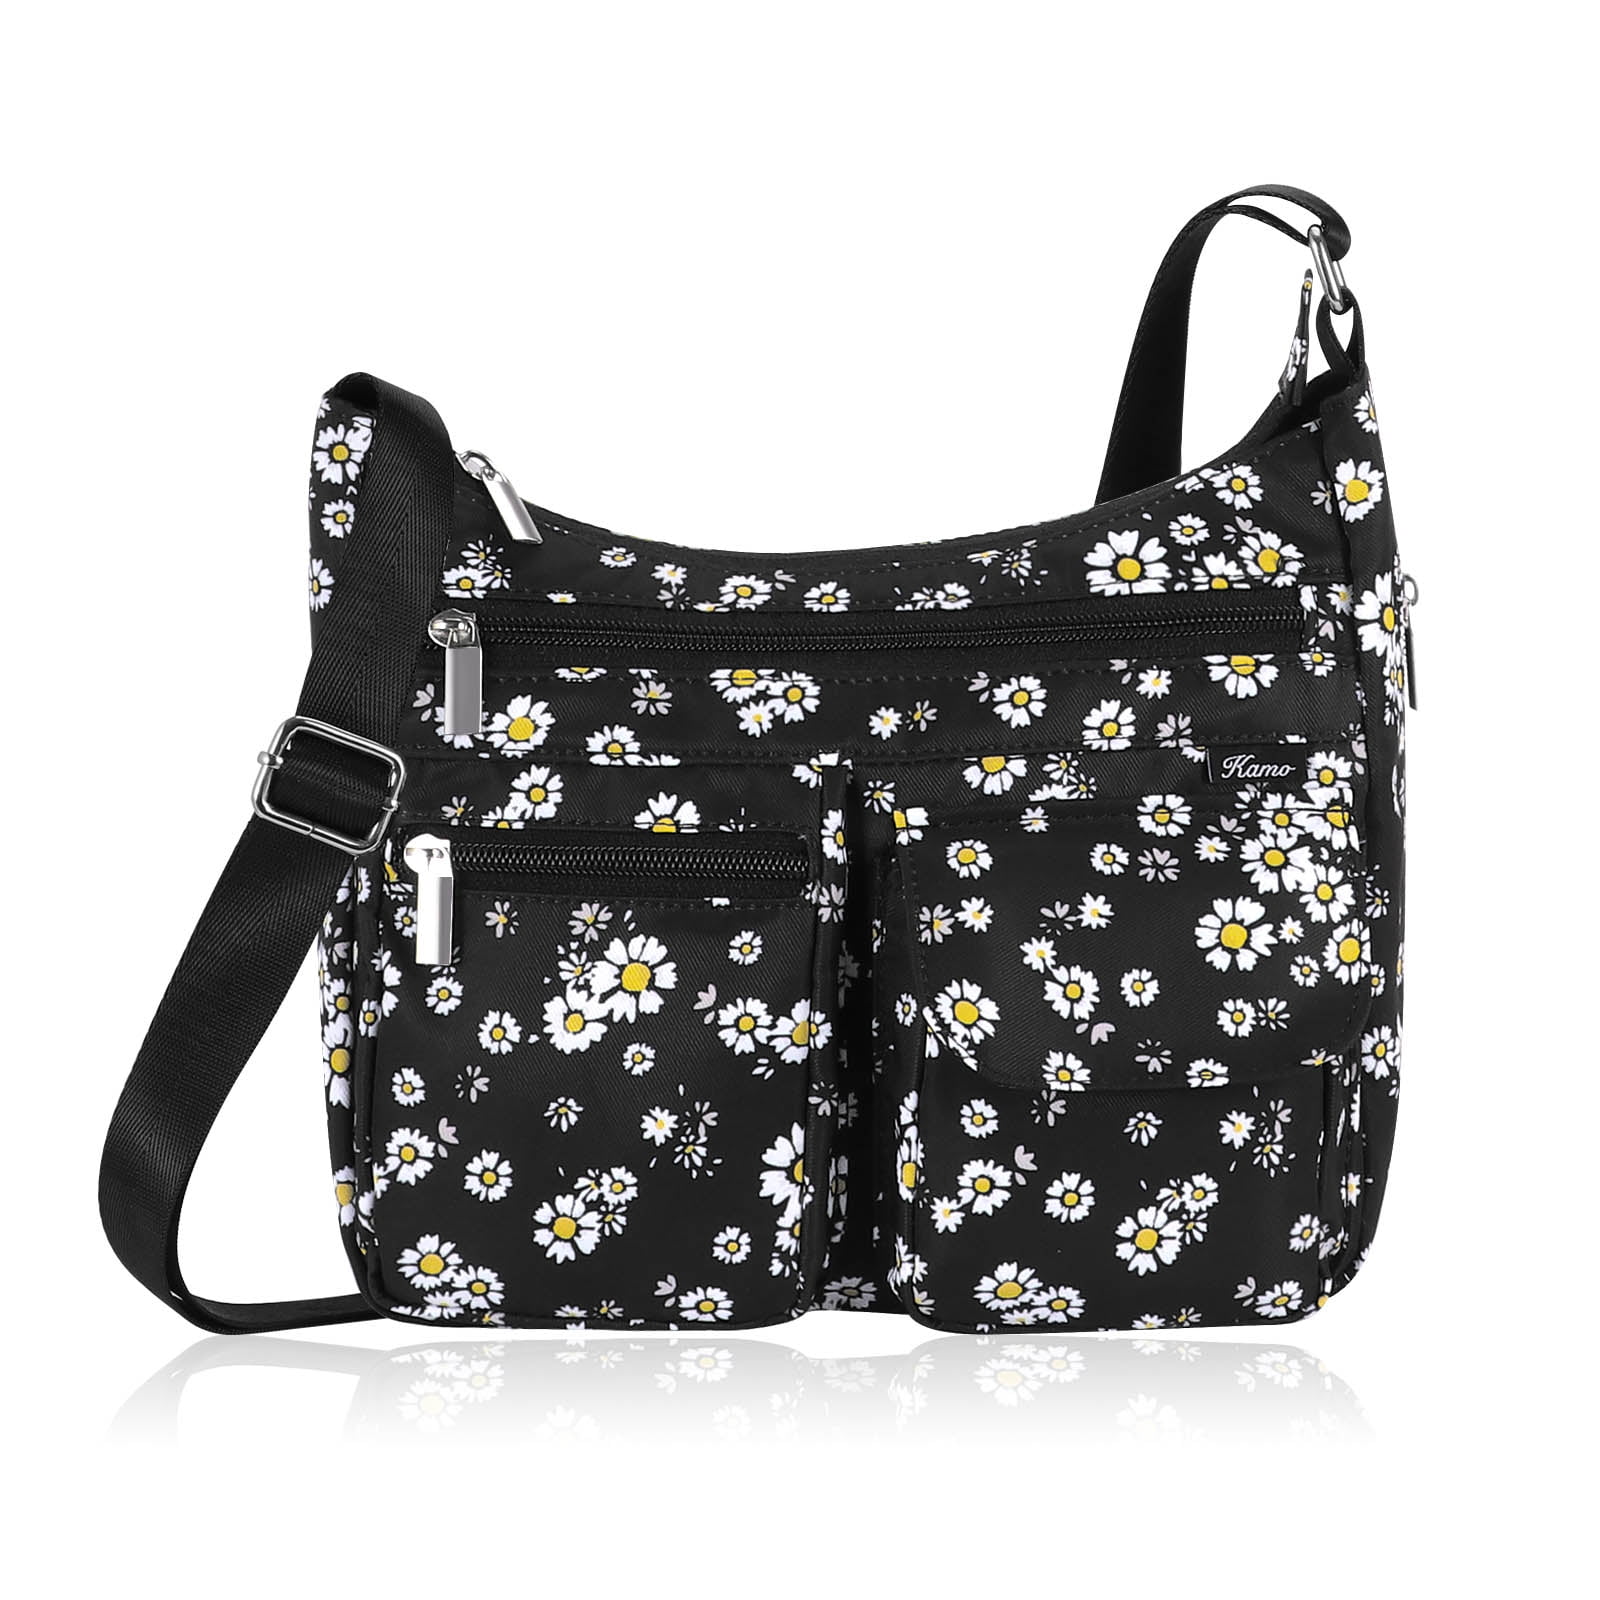 Hawee - Crossbody Bag for Women - Multi-pocket Shoulder Bag Lightweight ...